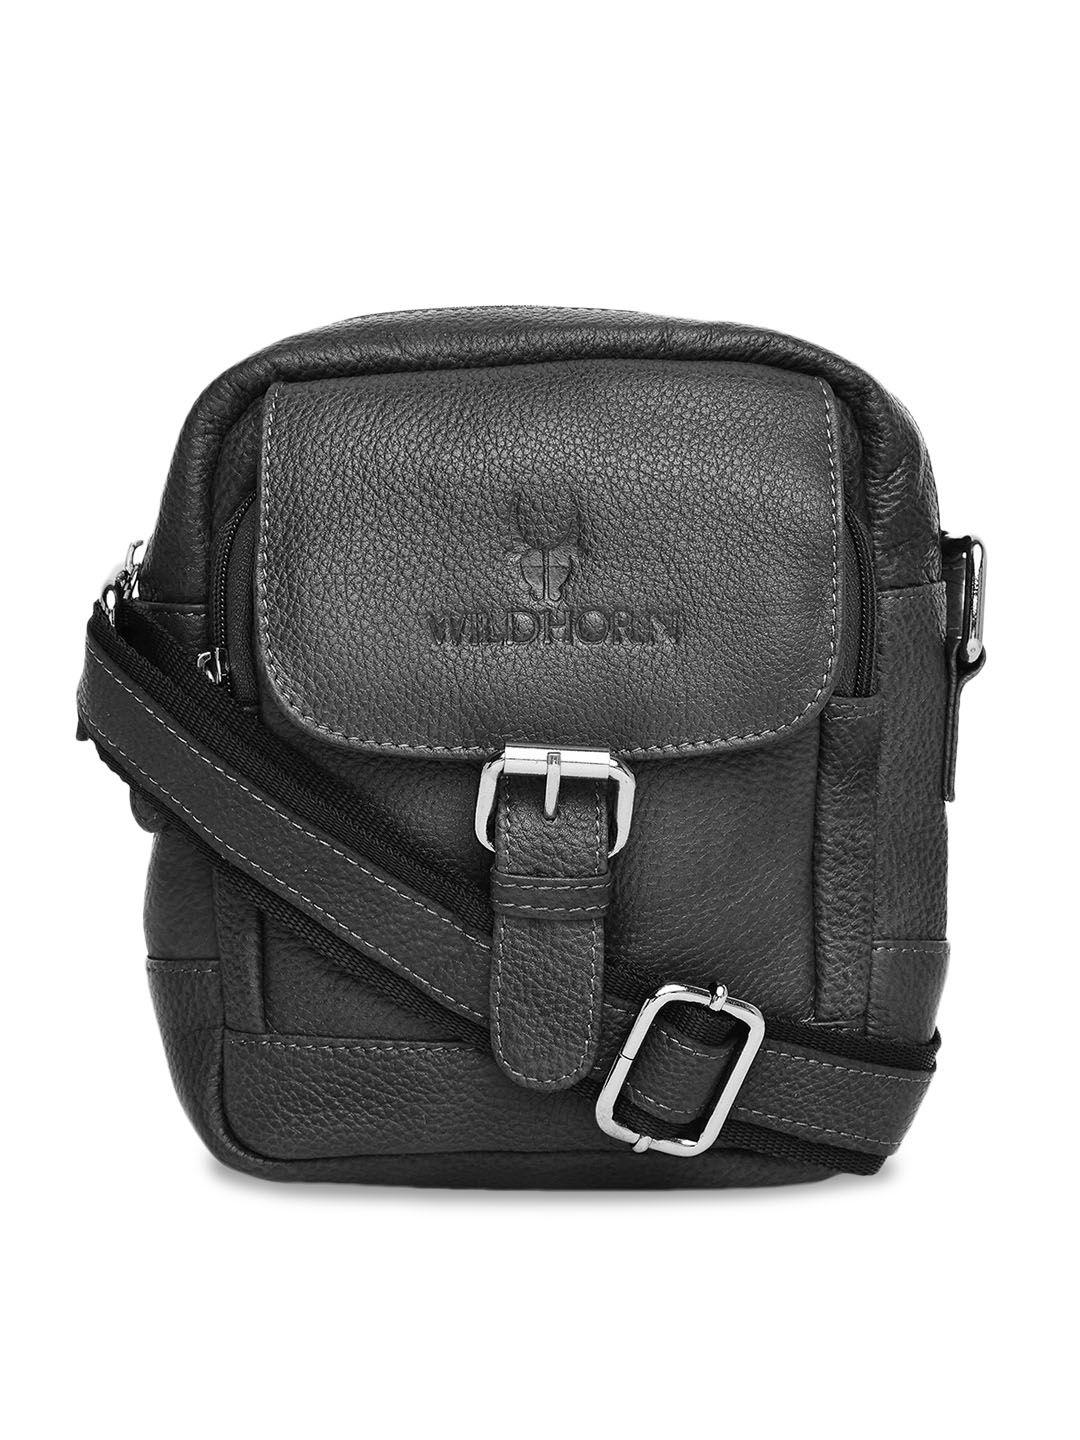 wildhorn black leather structured sling bag